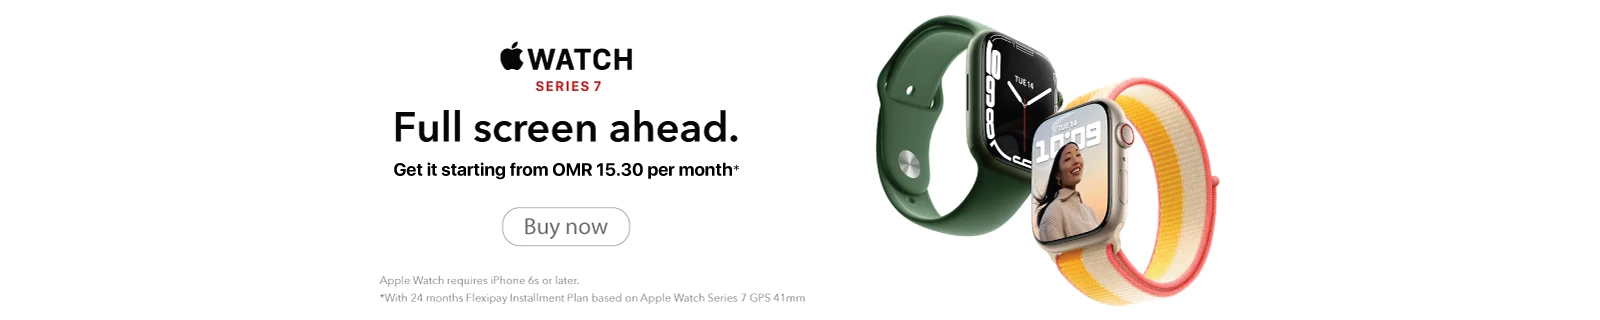 Apple Watch _W&S